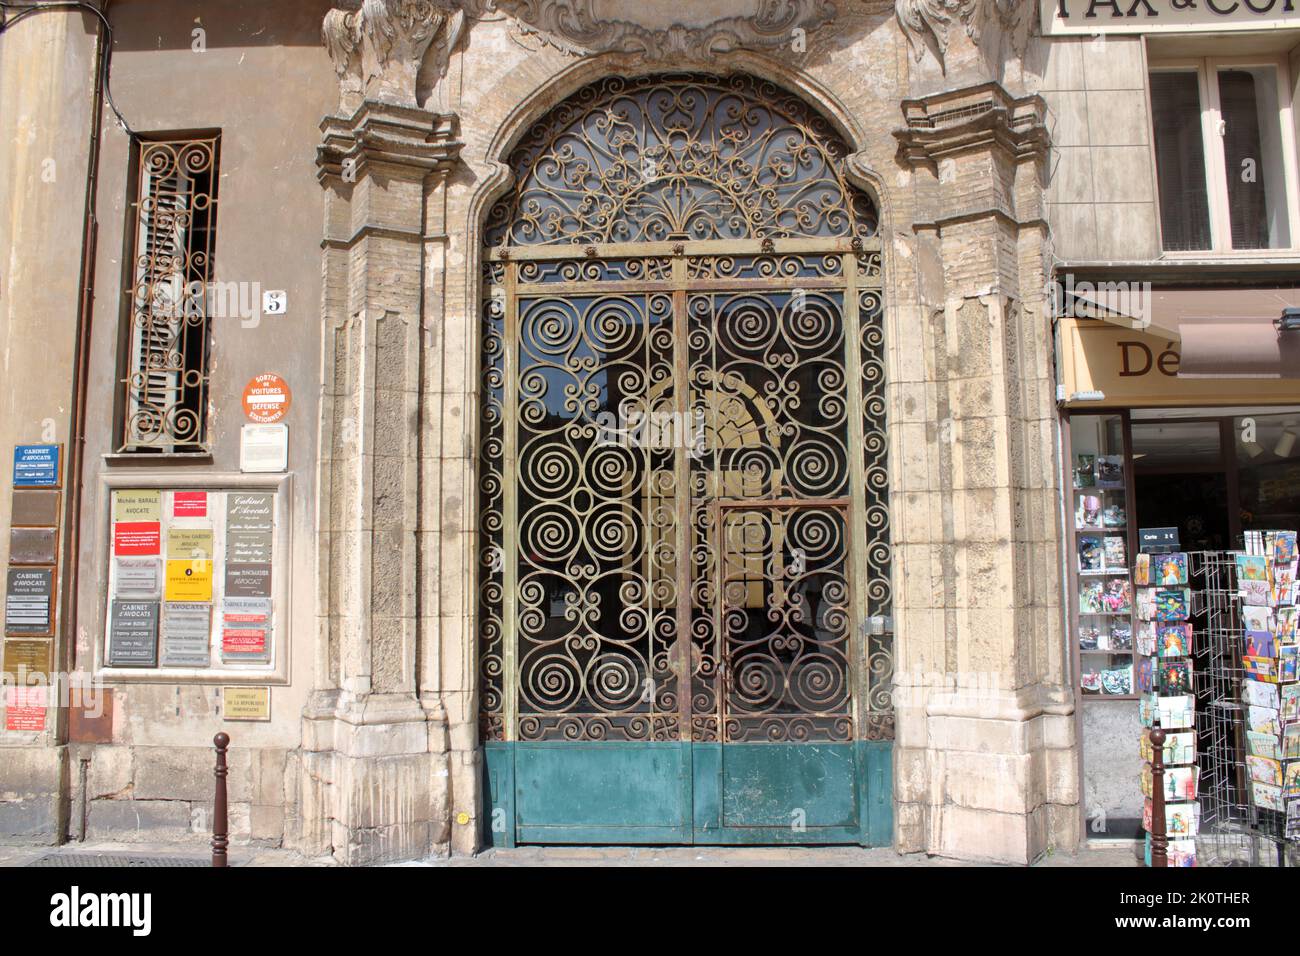 Portes d'entrée ouvragées d'un bâtiment du 19th siècle sur la place du Palais de Justice dans la vieille ville de Nice sur la Côte d'Azur en France. Banque D'Images